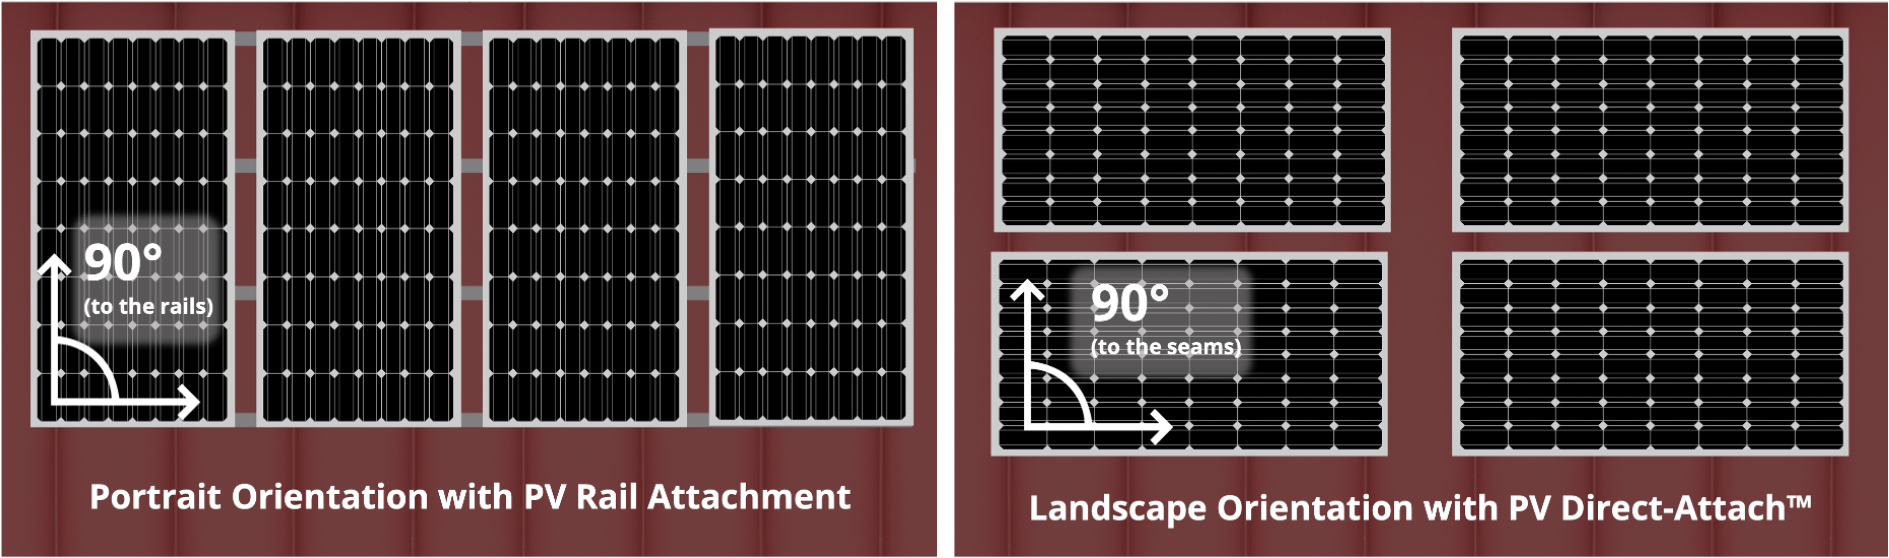 solar panel color illustration portrait and landscape orientation with PV rail attachment